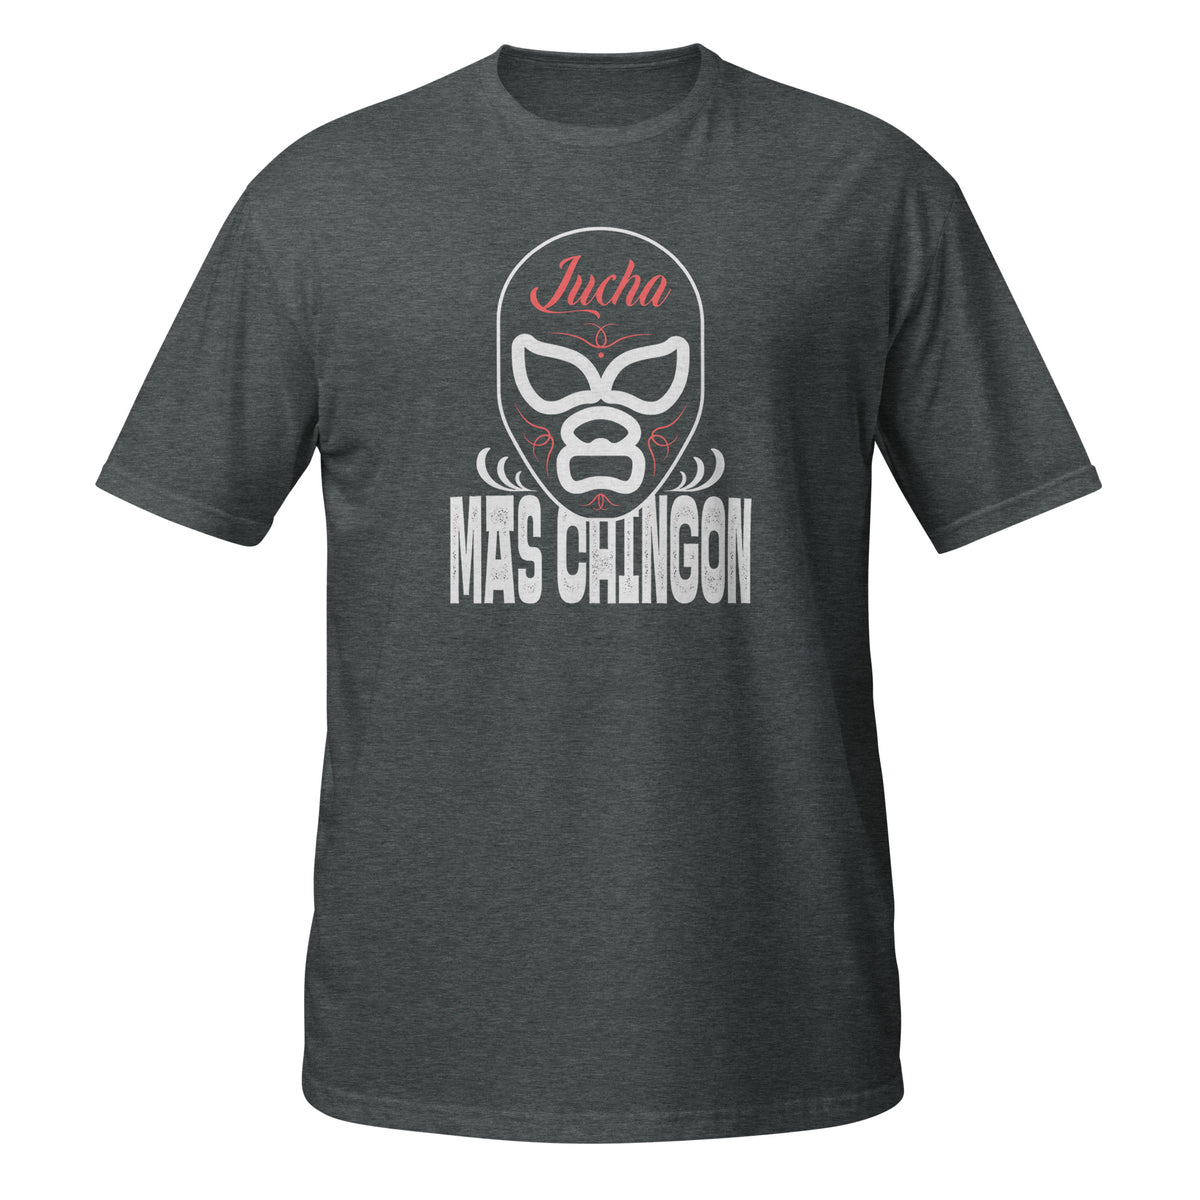 Lucha Mas Chingón T-Shirt (Bad Ass Wrestler)